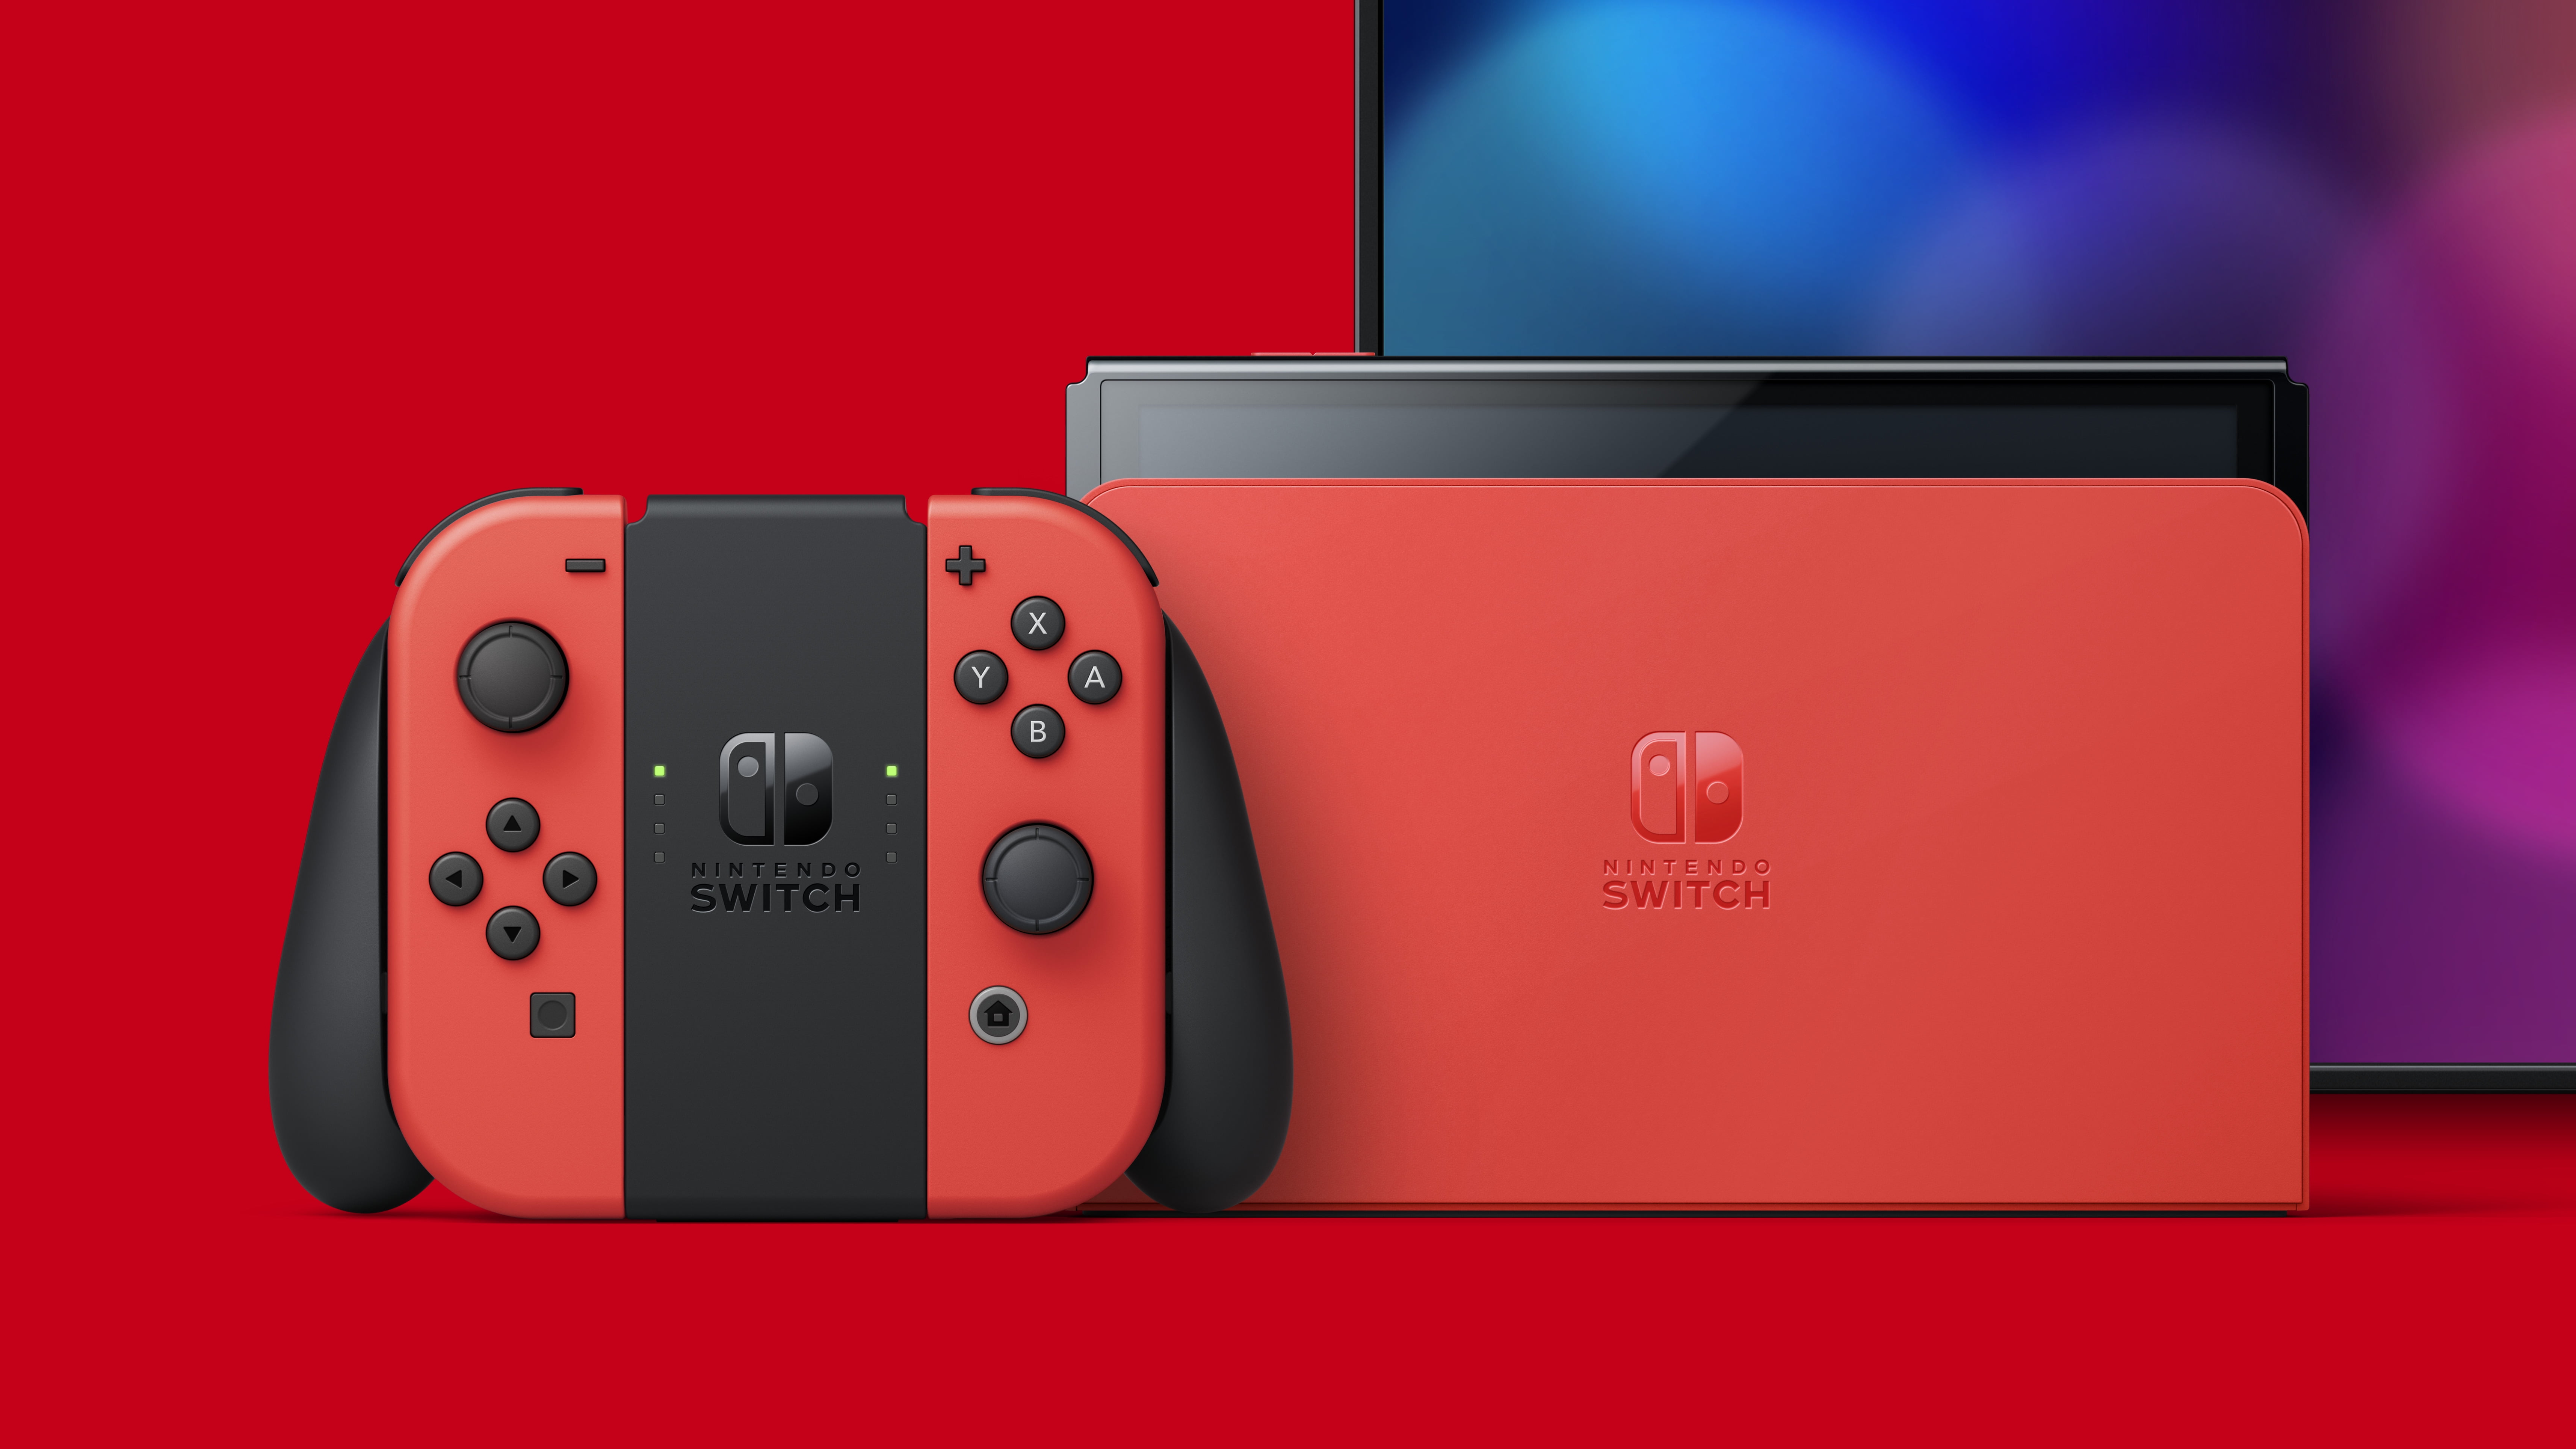 Nintendo Switch Oled Red Mario Edição Especial 64GB Vermelho / Frete Grátis!